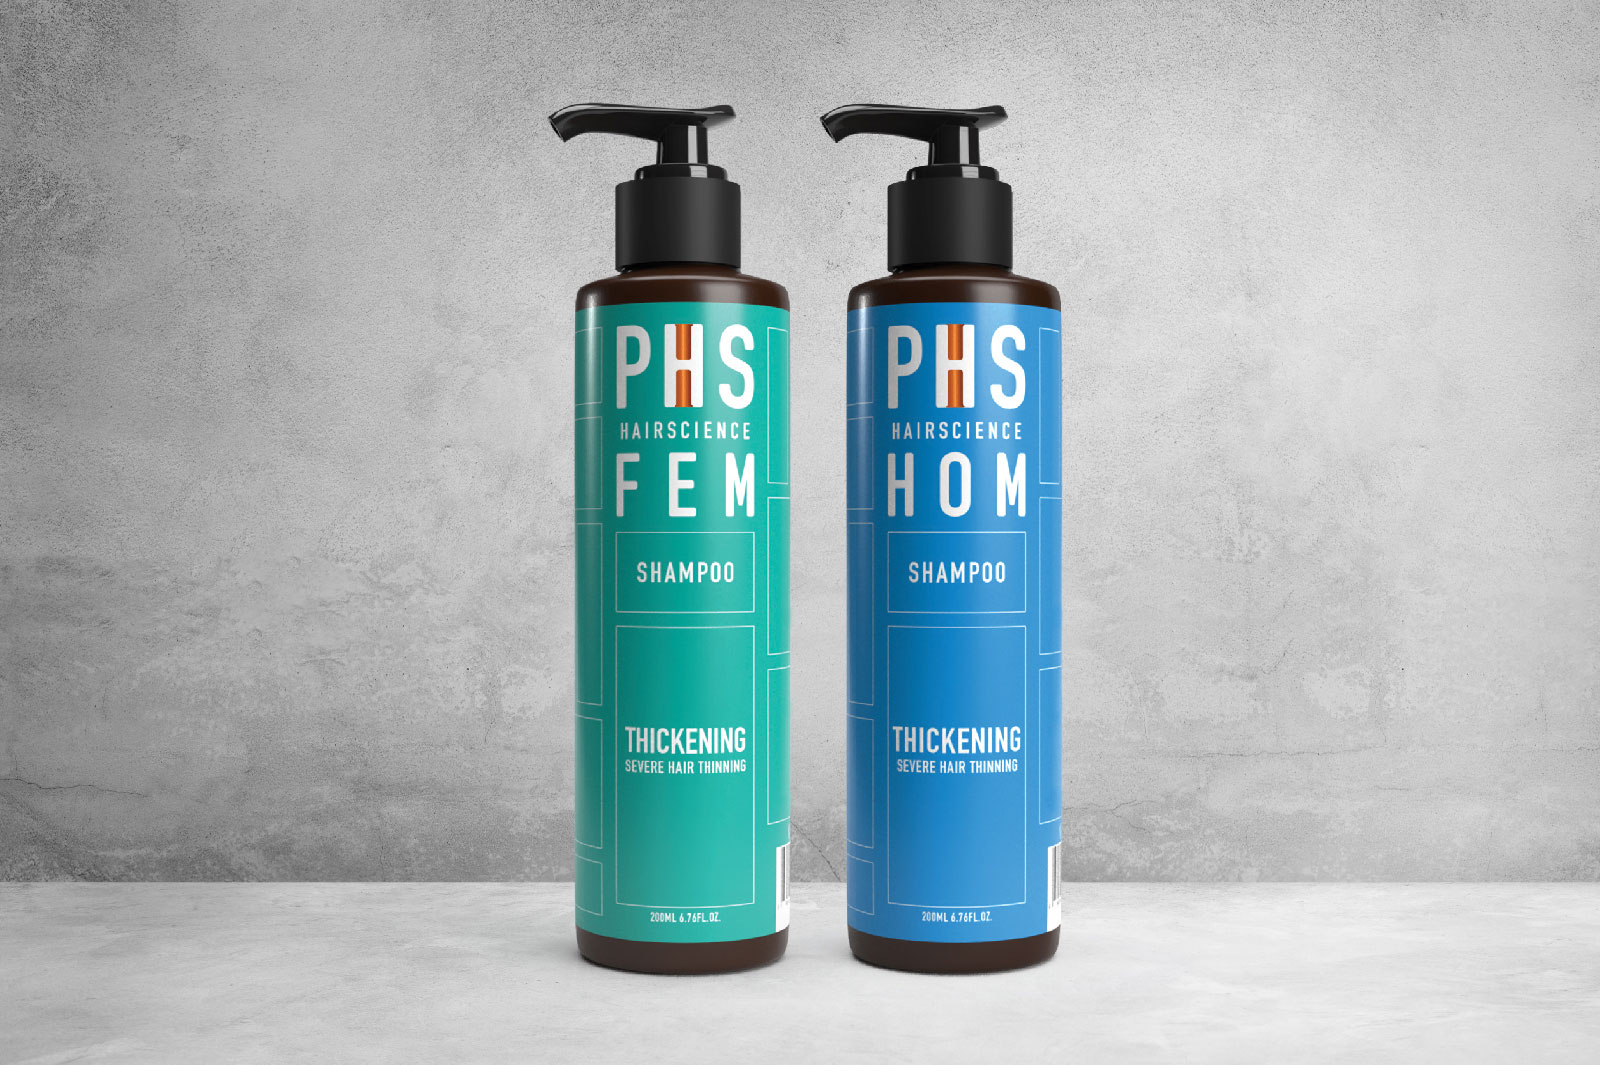 PHS HAIRSCIENCE FEM & HOM Thickening Shampoo